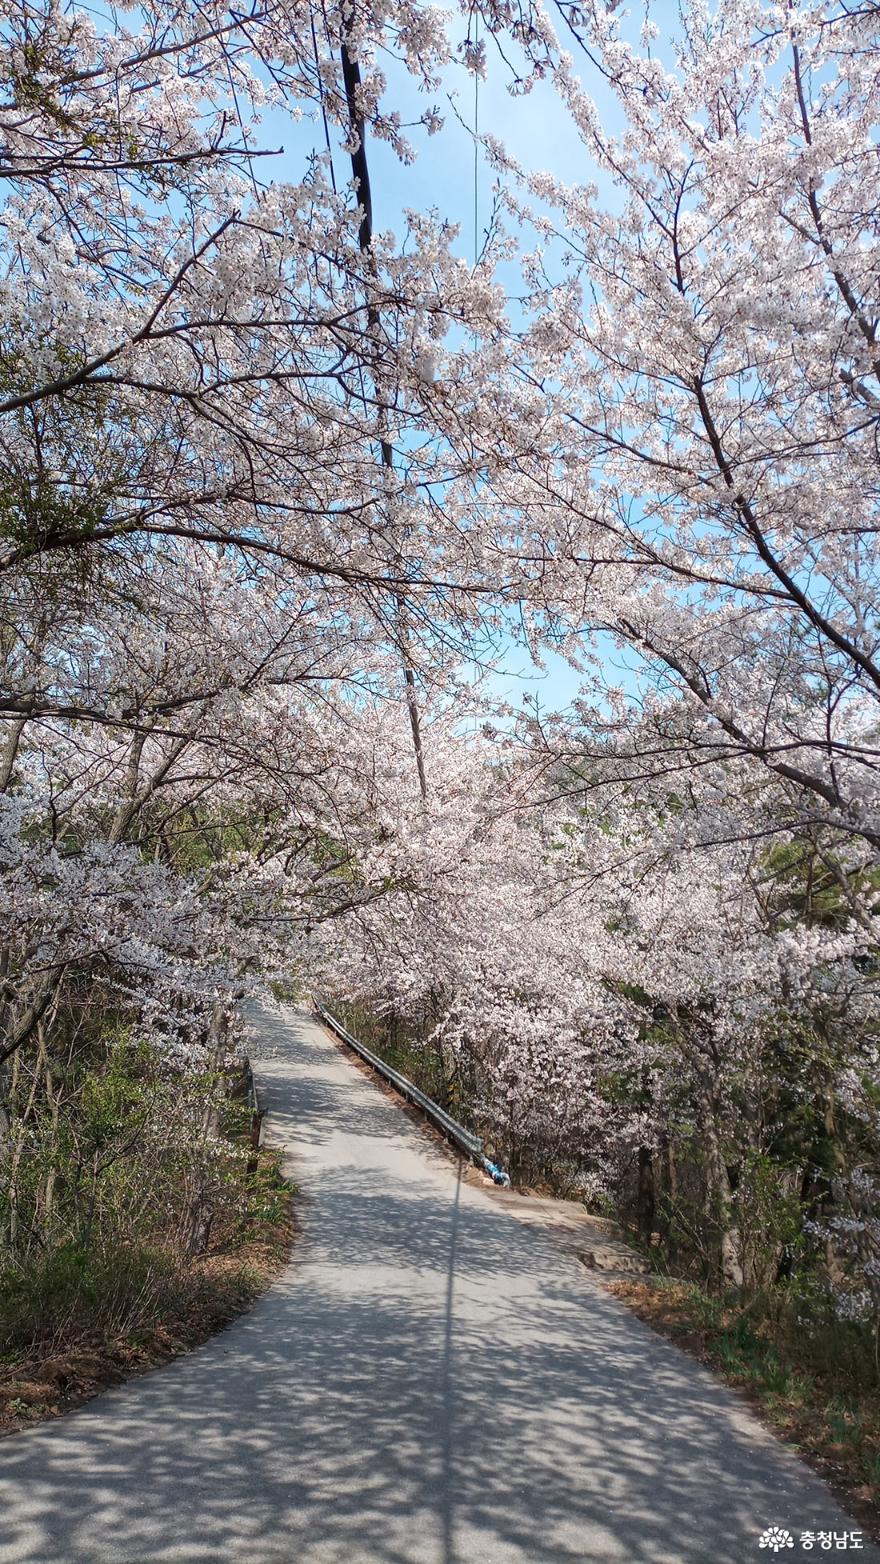 아름다운 벚꽃이 길 따라 피어있다.